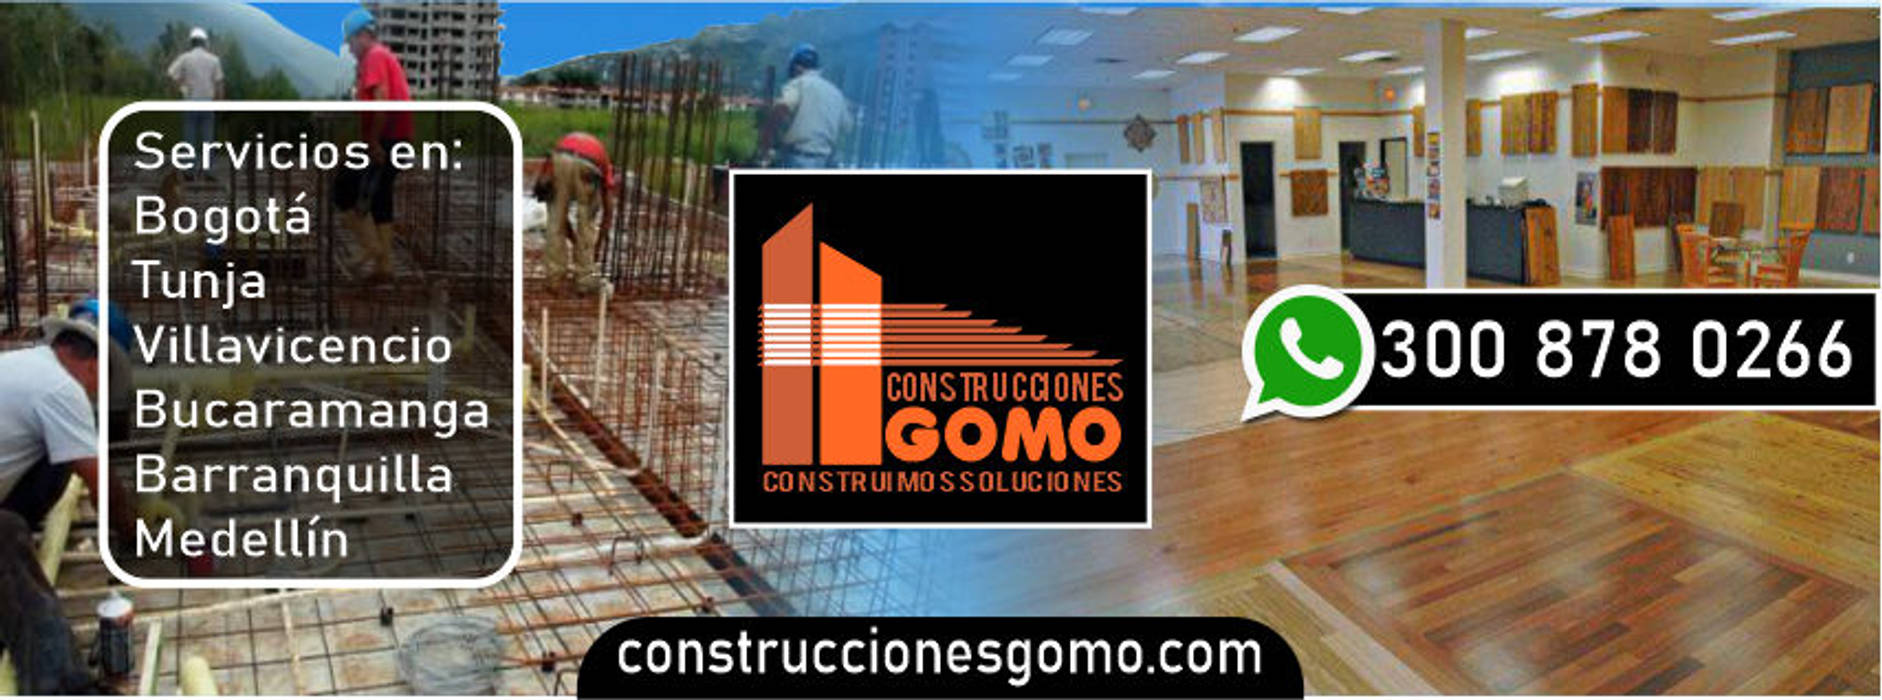 Construcciones Gomo Servicio en todo el País Construcciones Gomo S.A.S Casas modernas Construcciones Gomo Servicio en todo el País